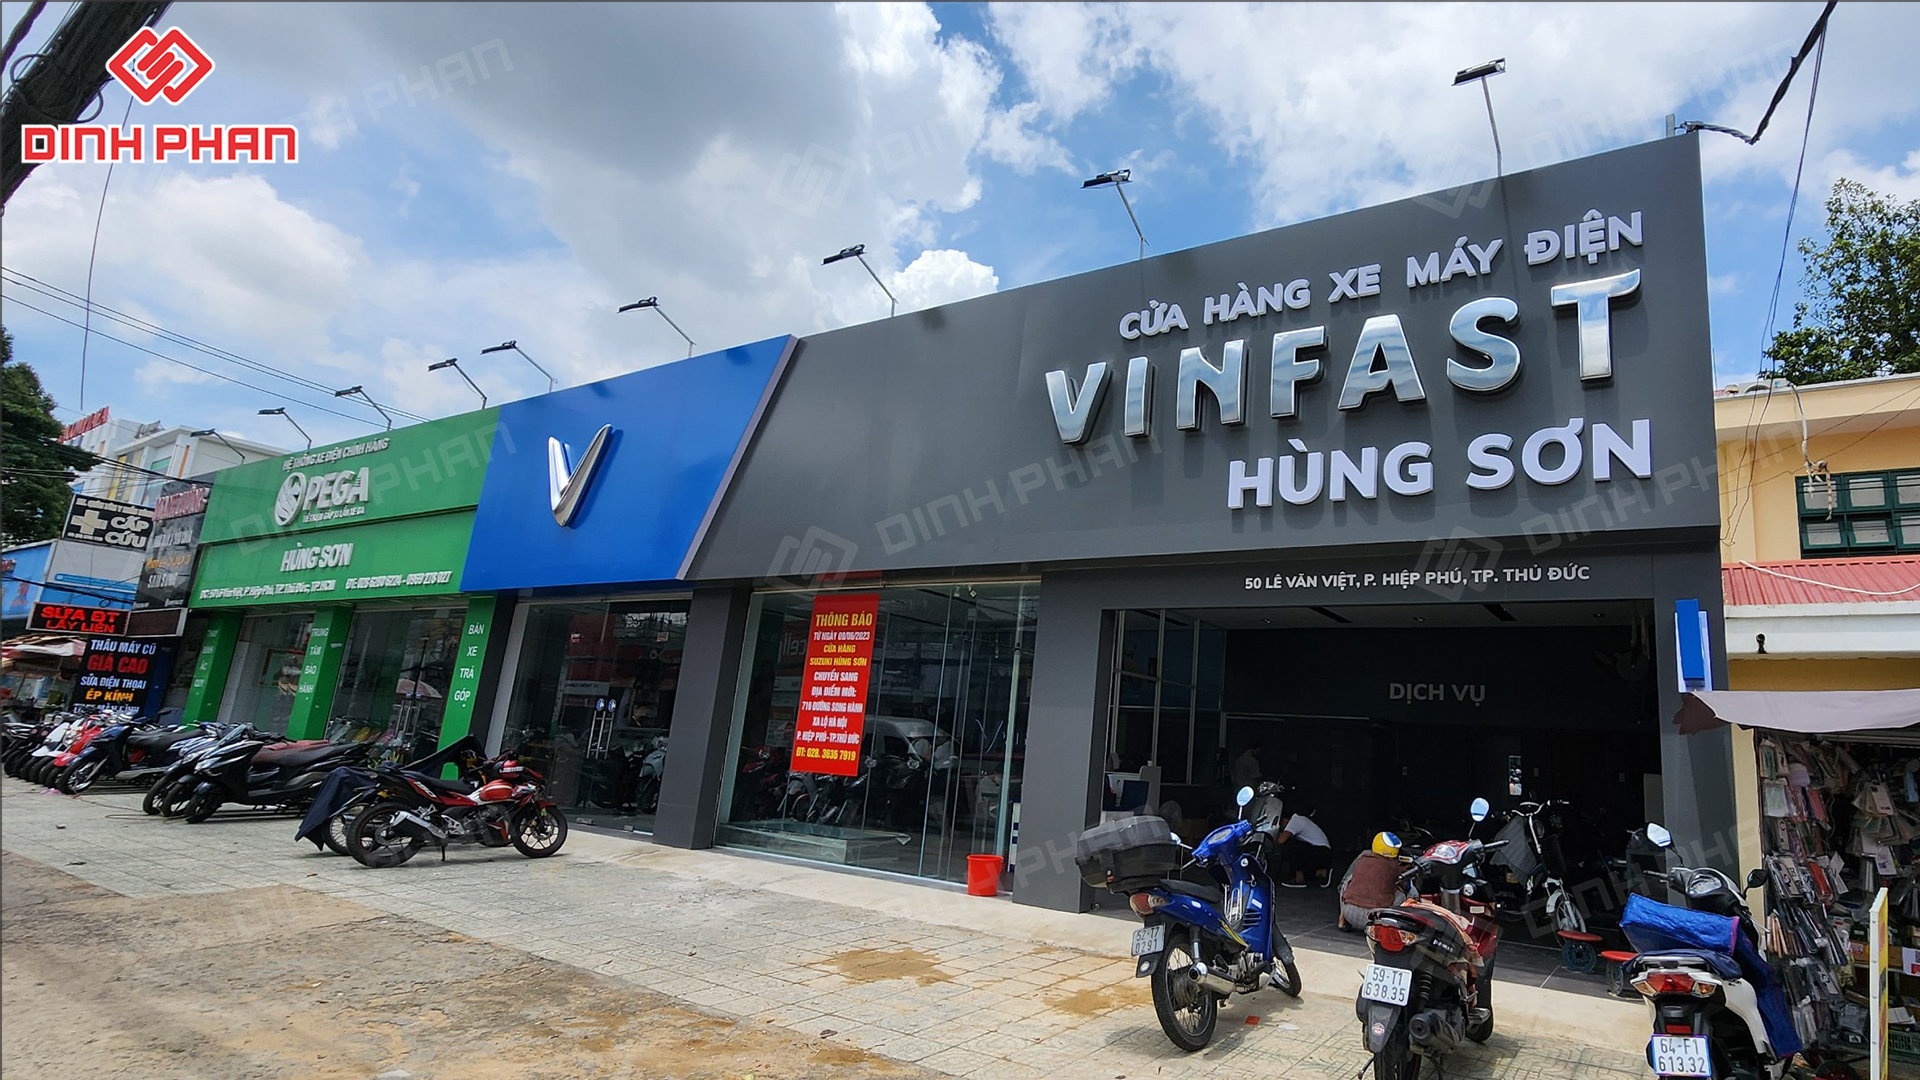 Bảng hiệu showroom Vinfast Hùng Sơn 